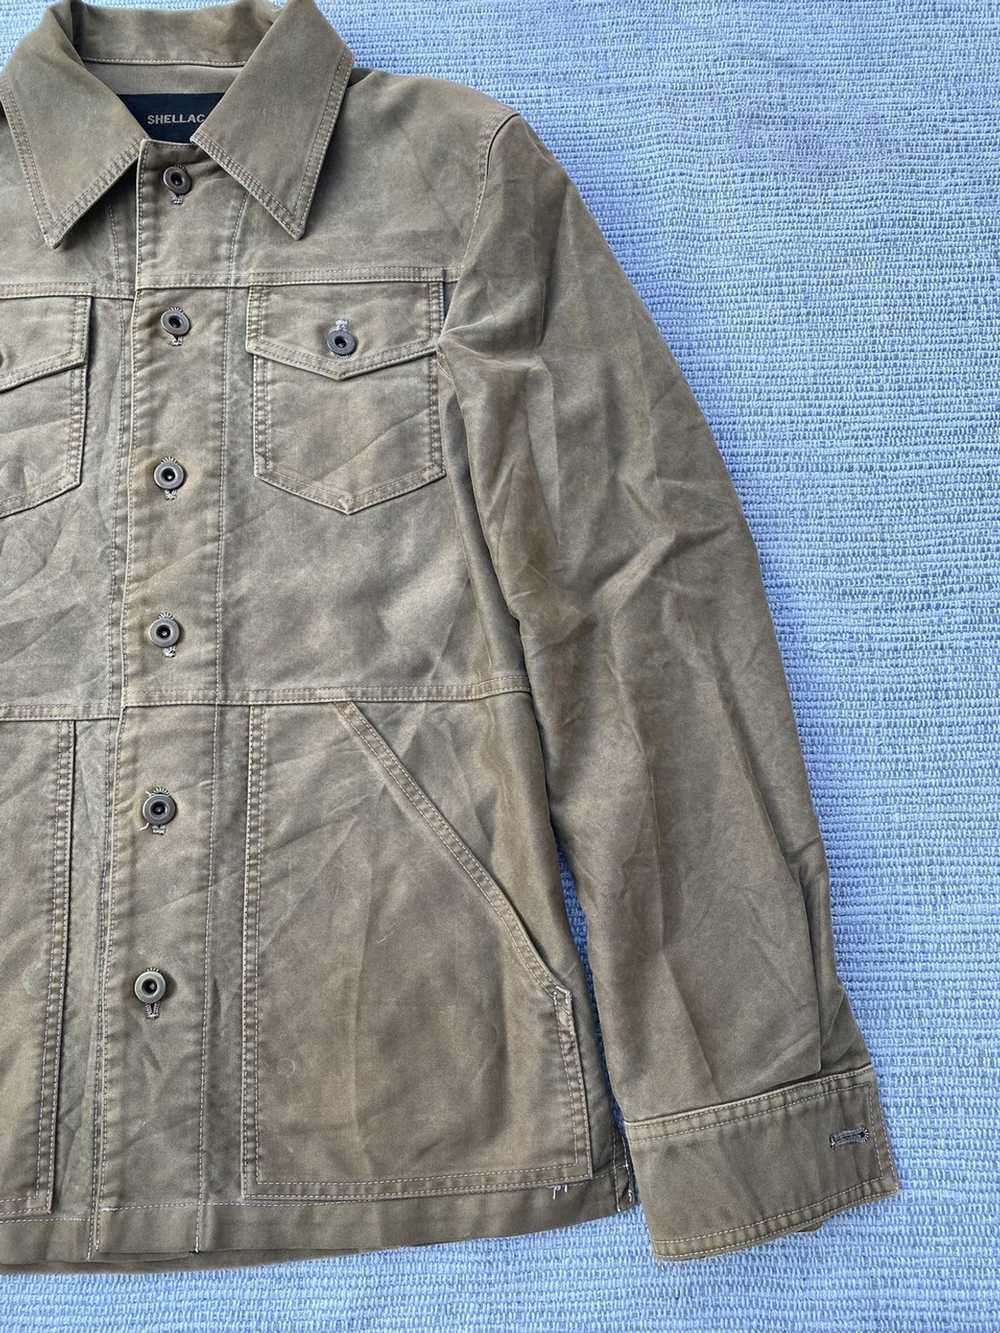 Japanese Brand shellac jacket - image 4